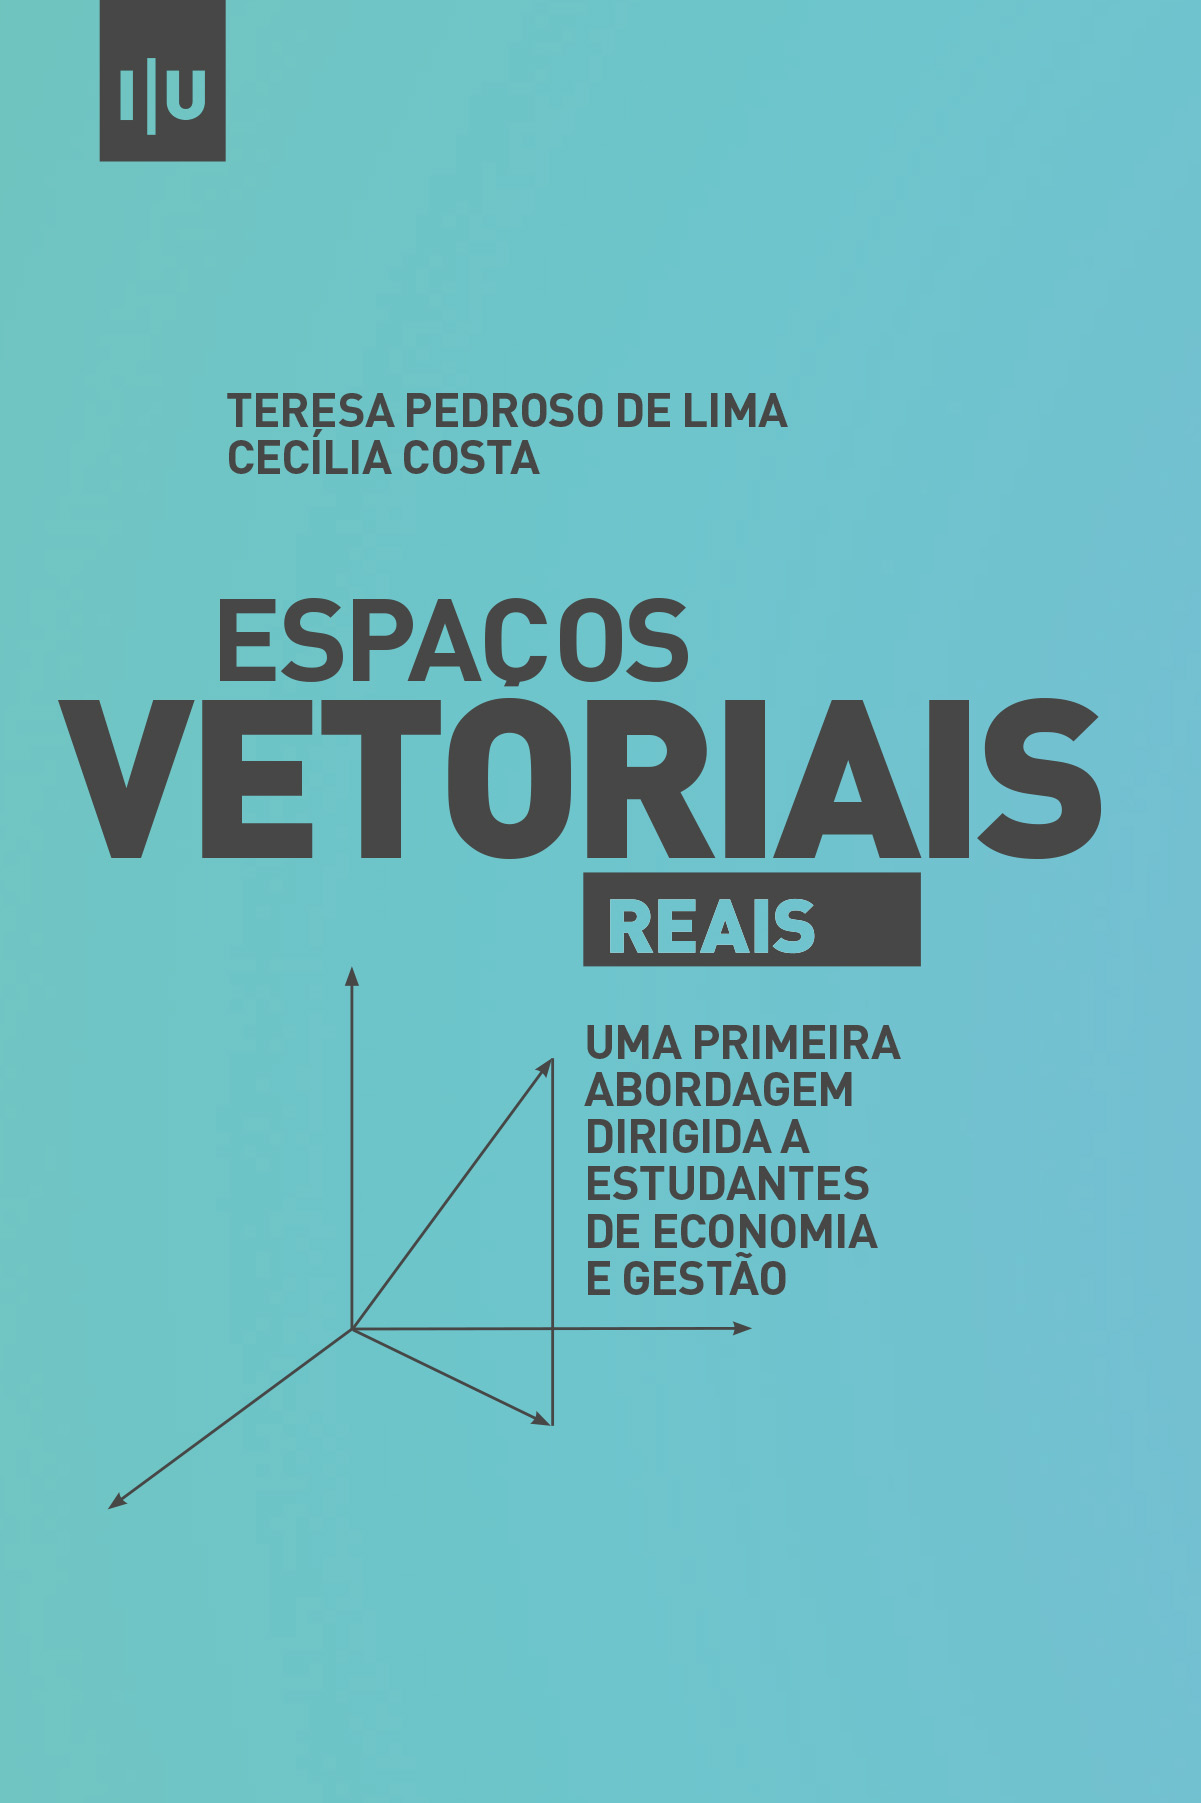 Espaços vetoriais (reais): uma primeira abordagem dirigida a estudantes de economia e gestão - Imprensa da Universidade de Coimbra (IUC)